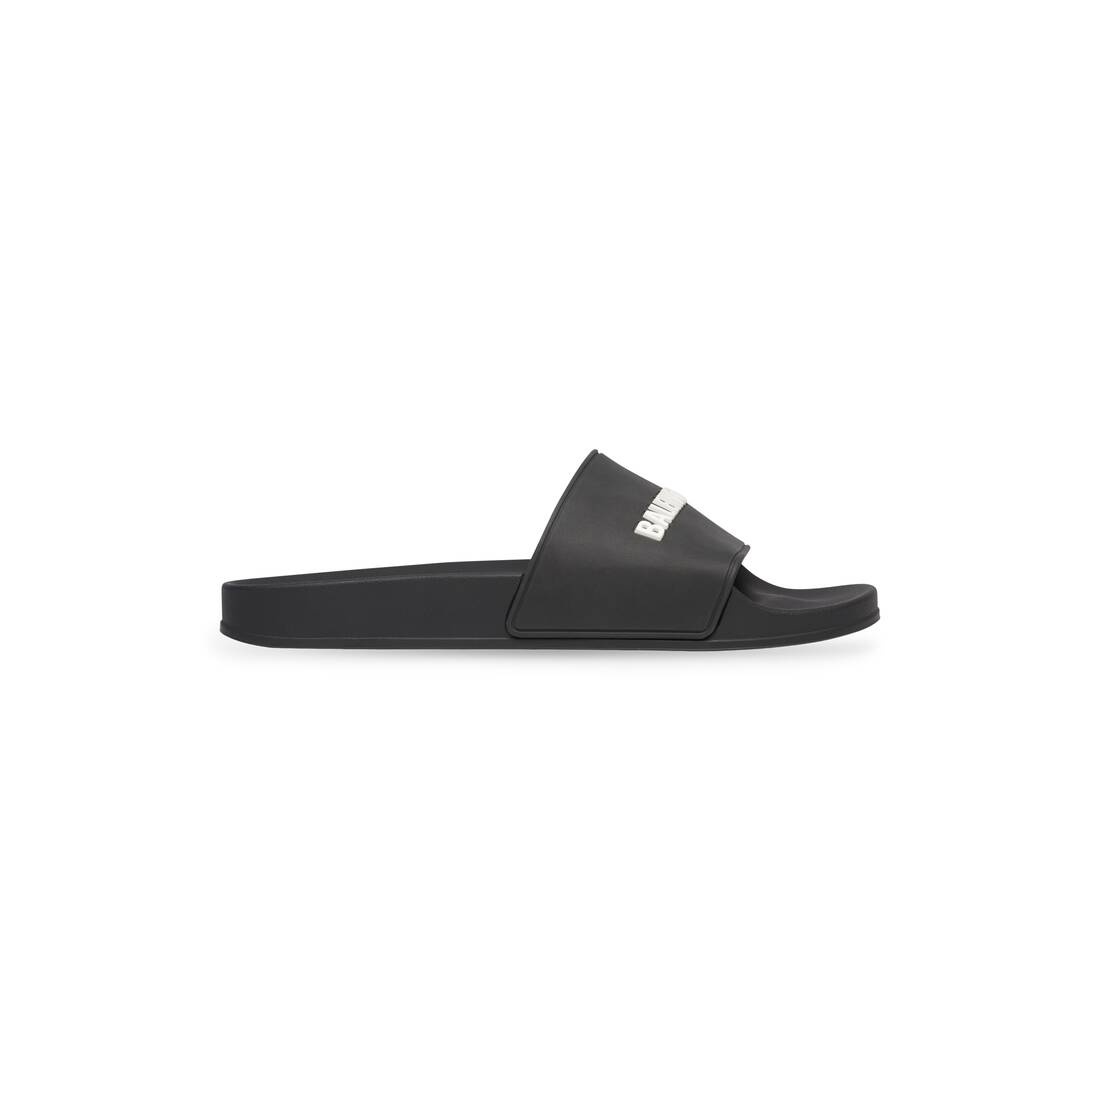 Men's Pool Slide Sandal in Black/white - 1